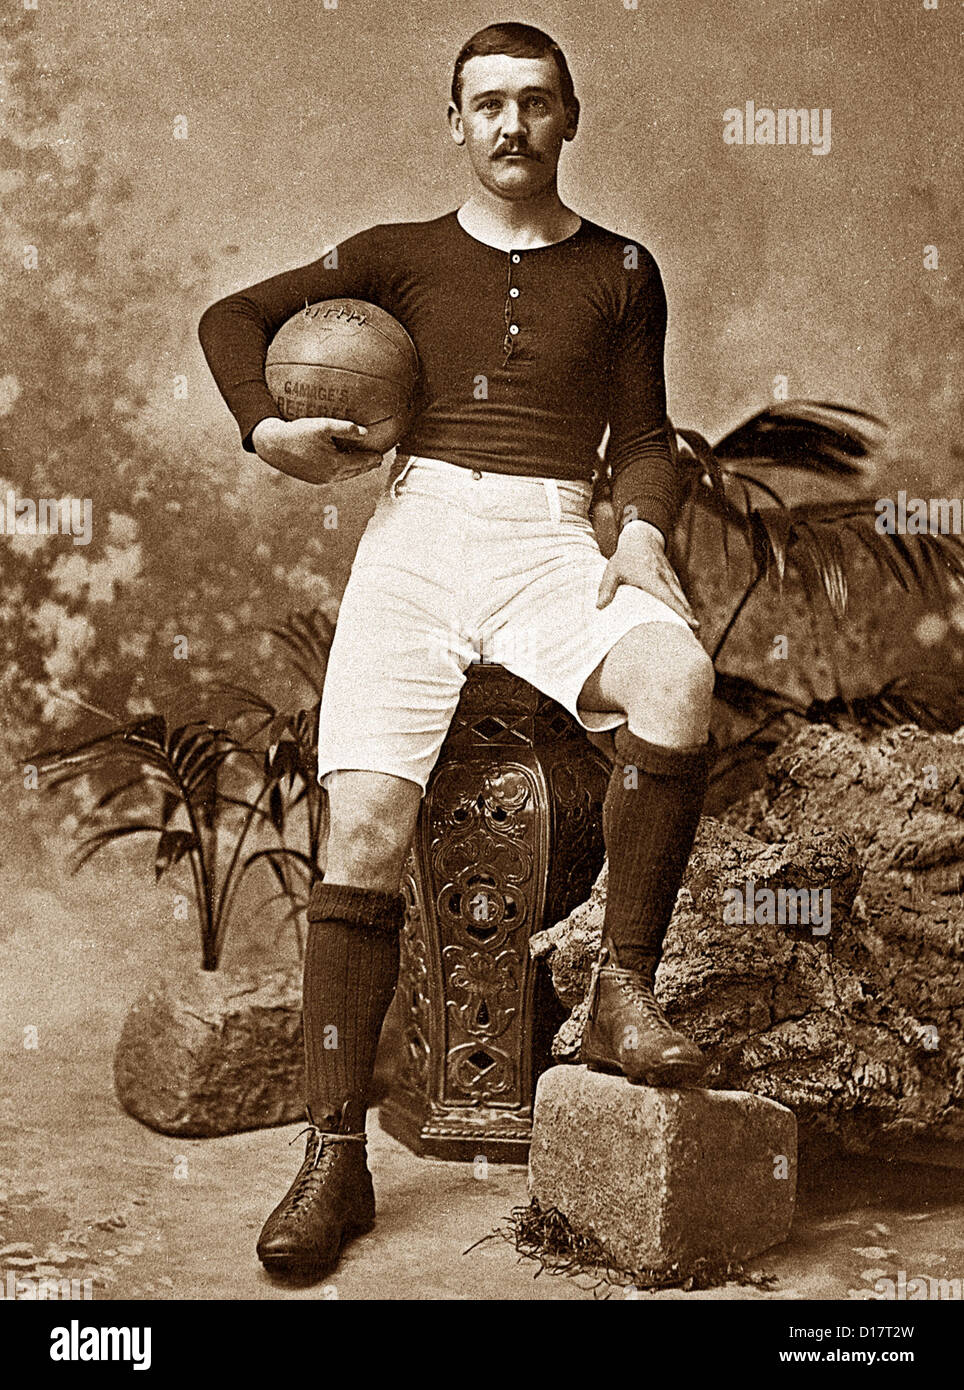 El Futbolista del período Victoriano Foto de stock